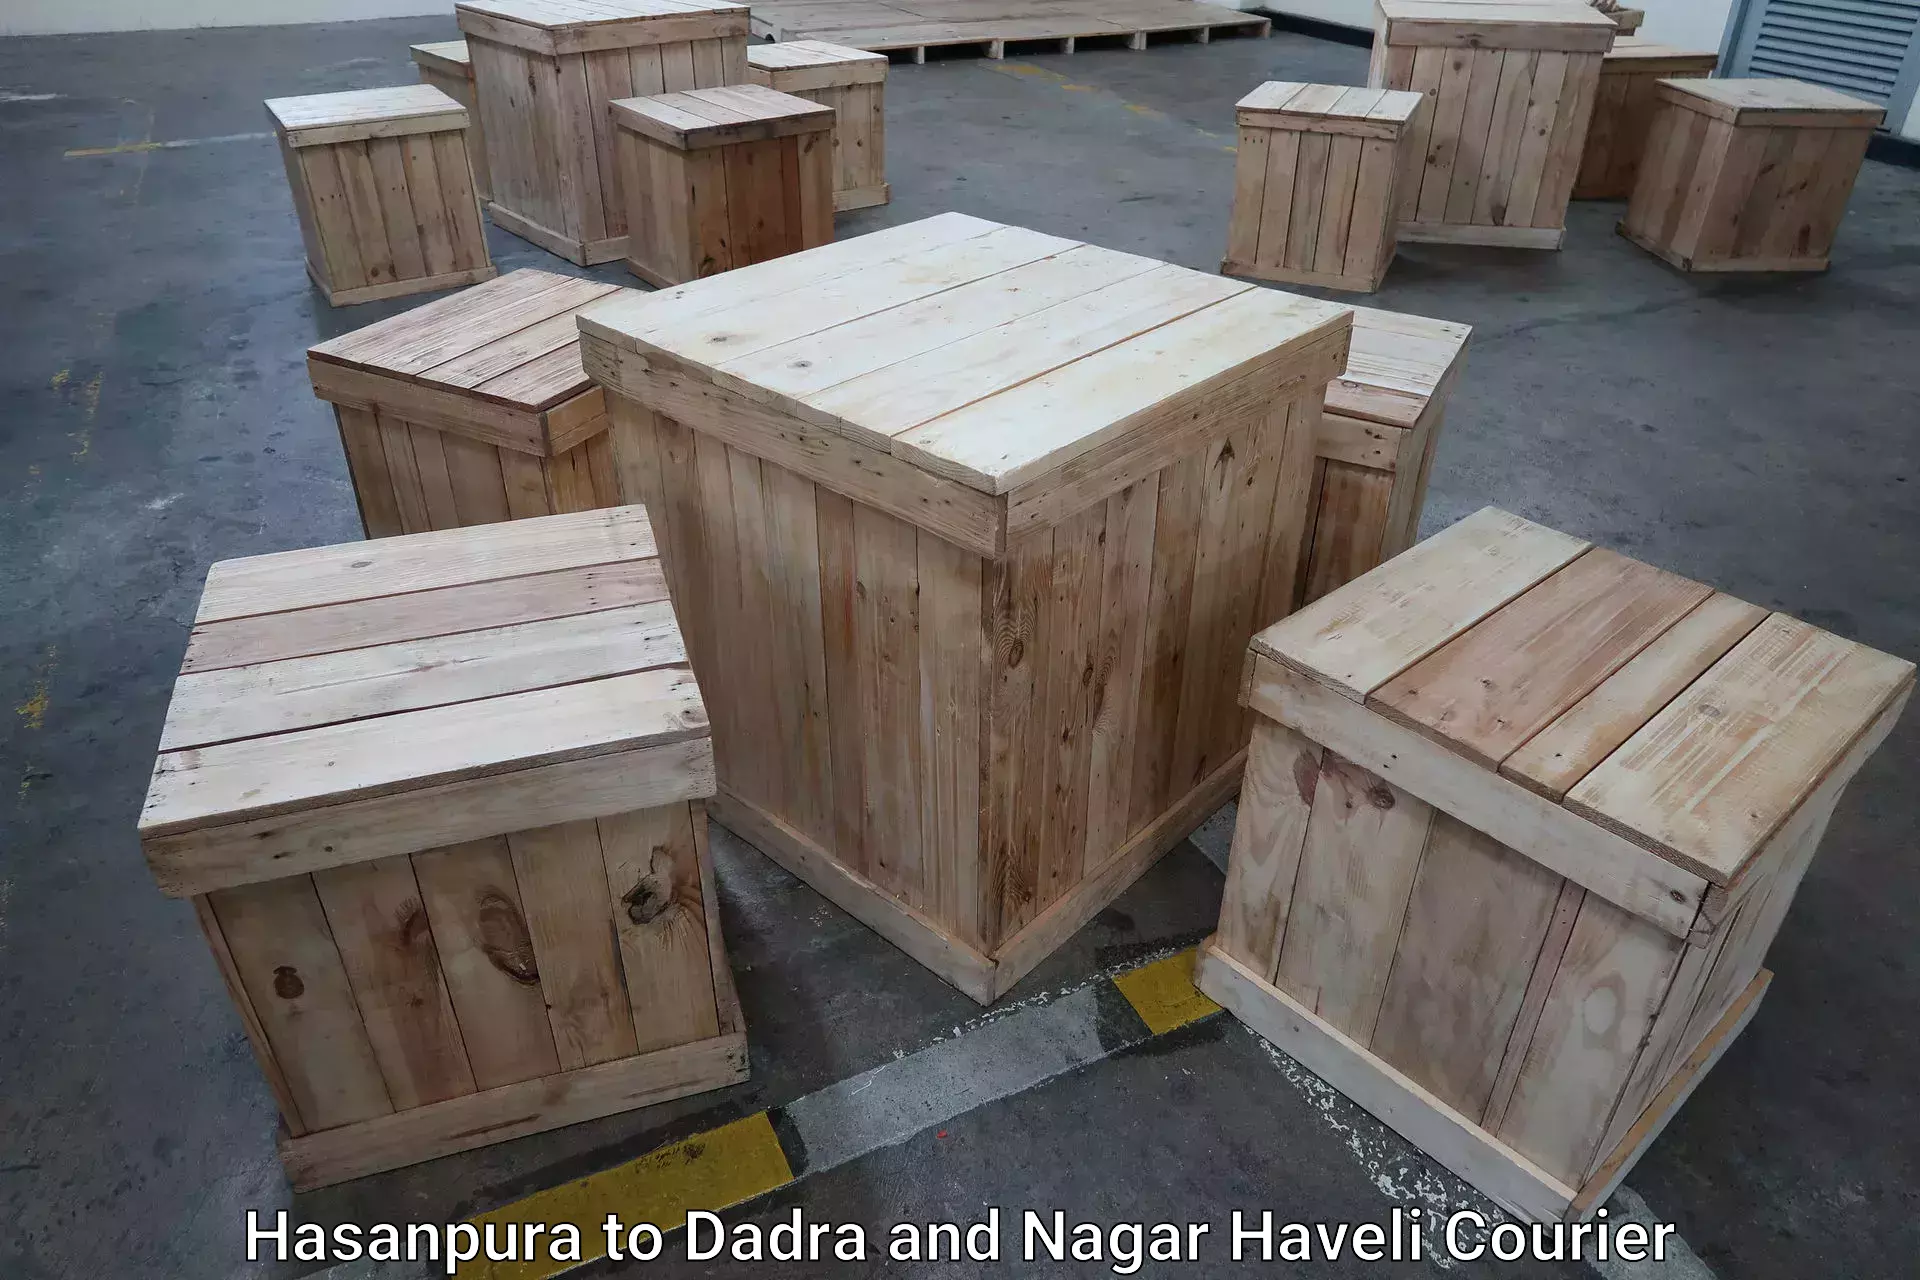 Urgent luggage shipment Hasanpura to Dadra and Nagar Haveli